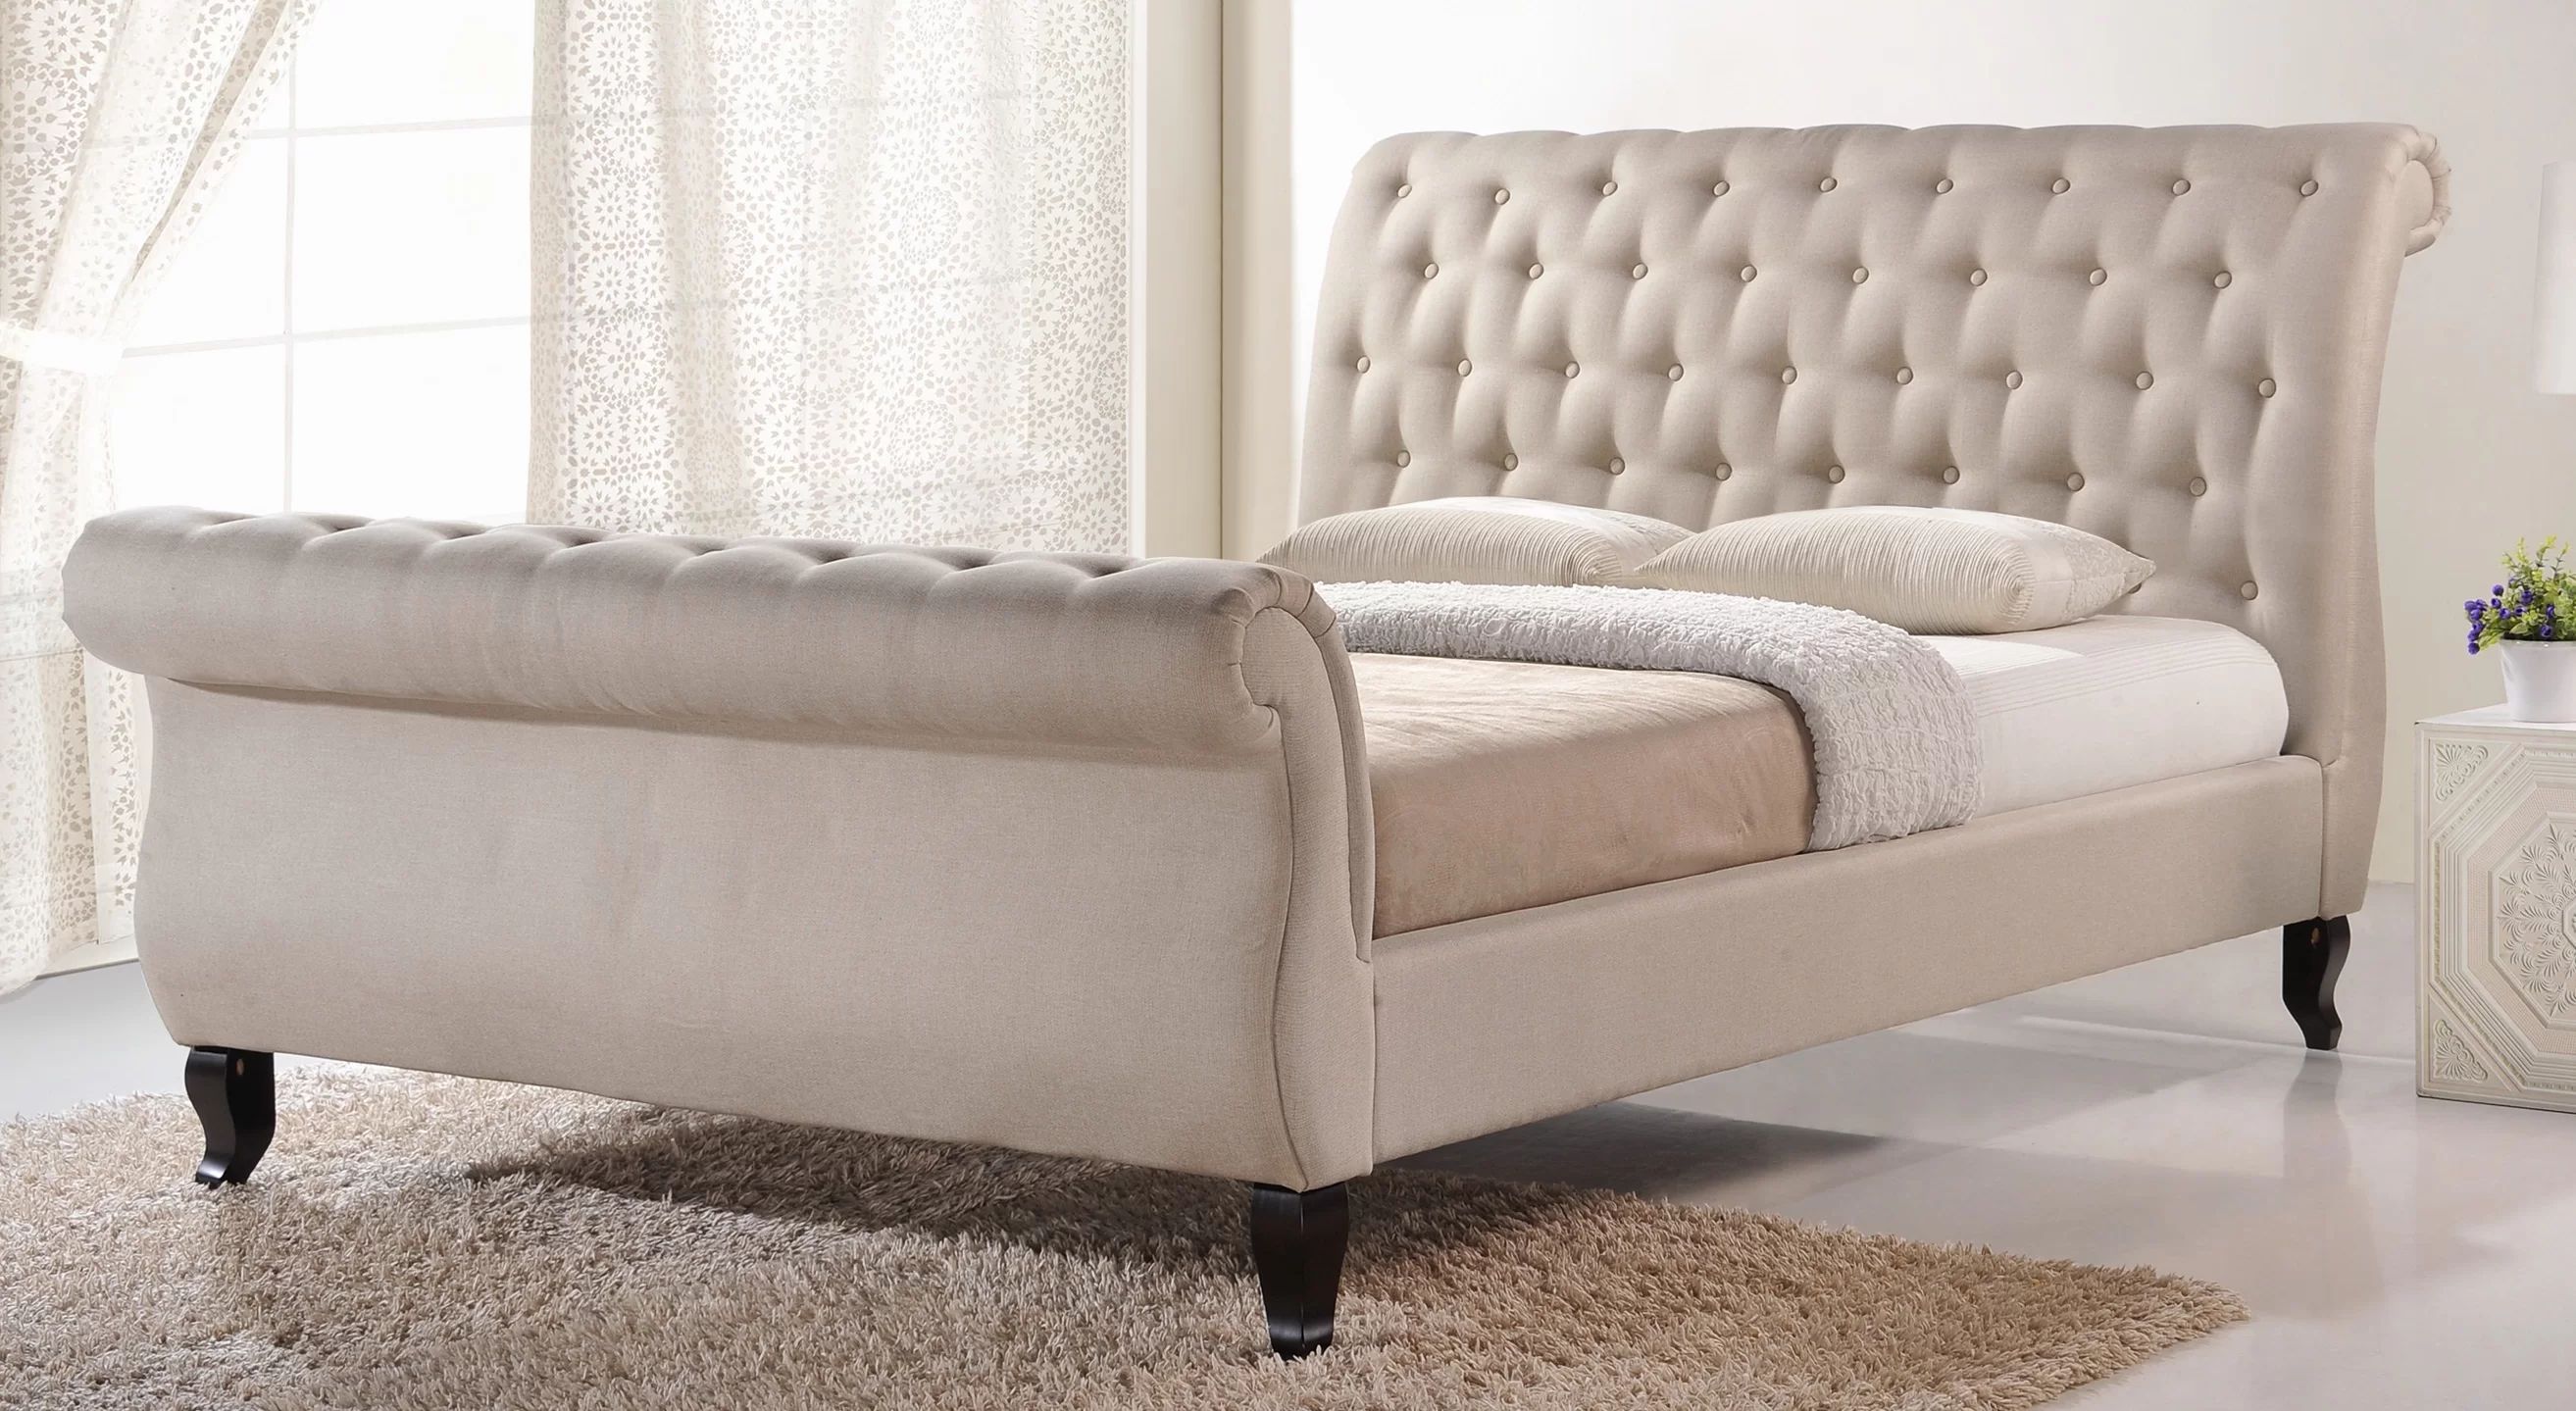 Vidette Tufted Upholstered Sleigh Platform Bed | Wayfair North America